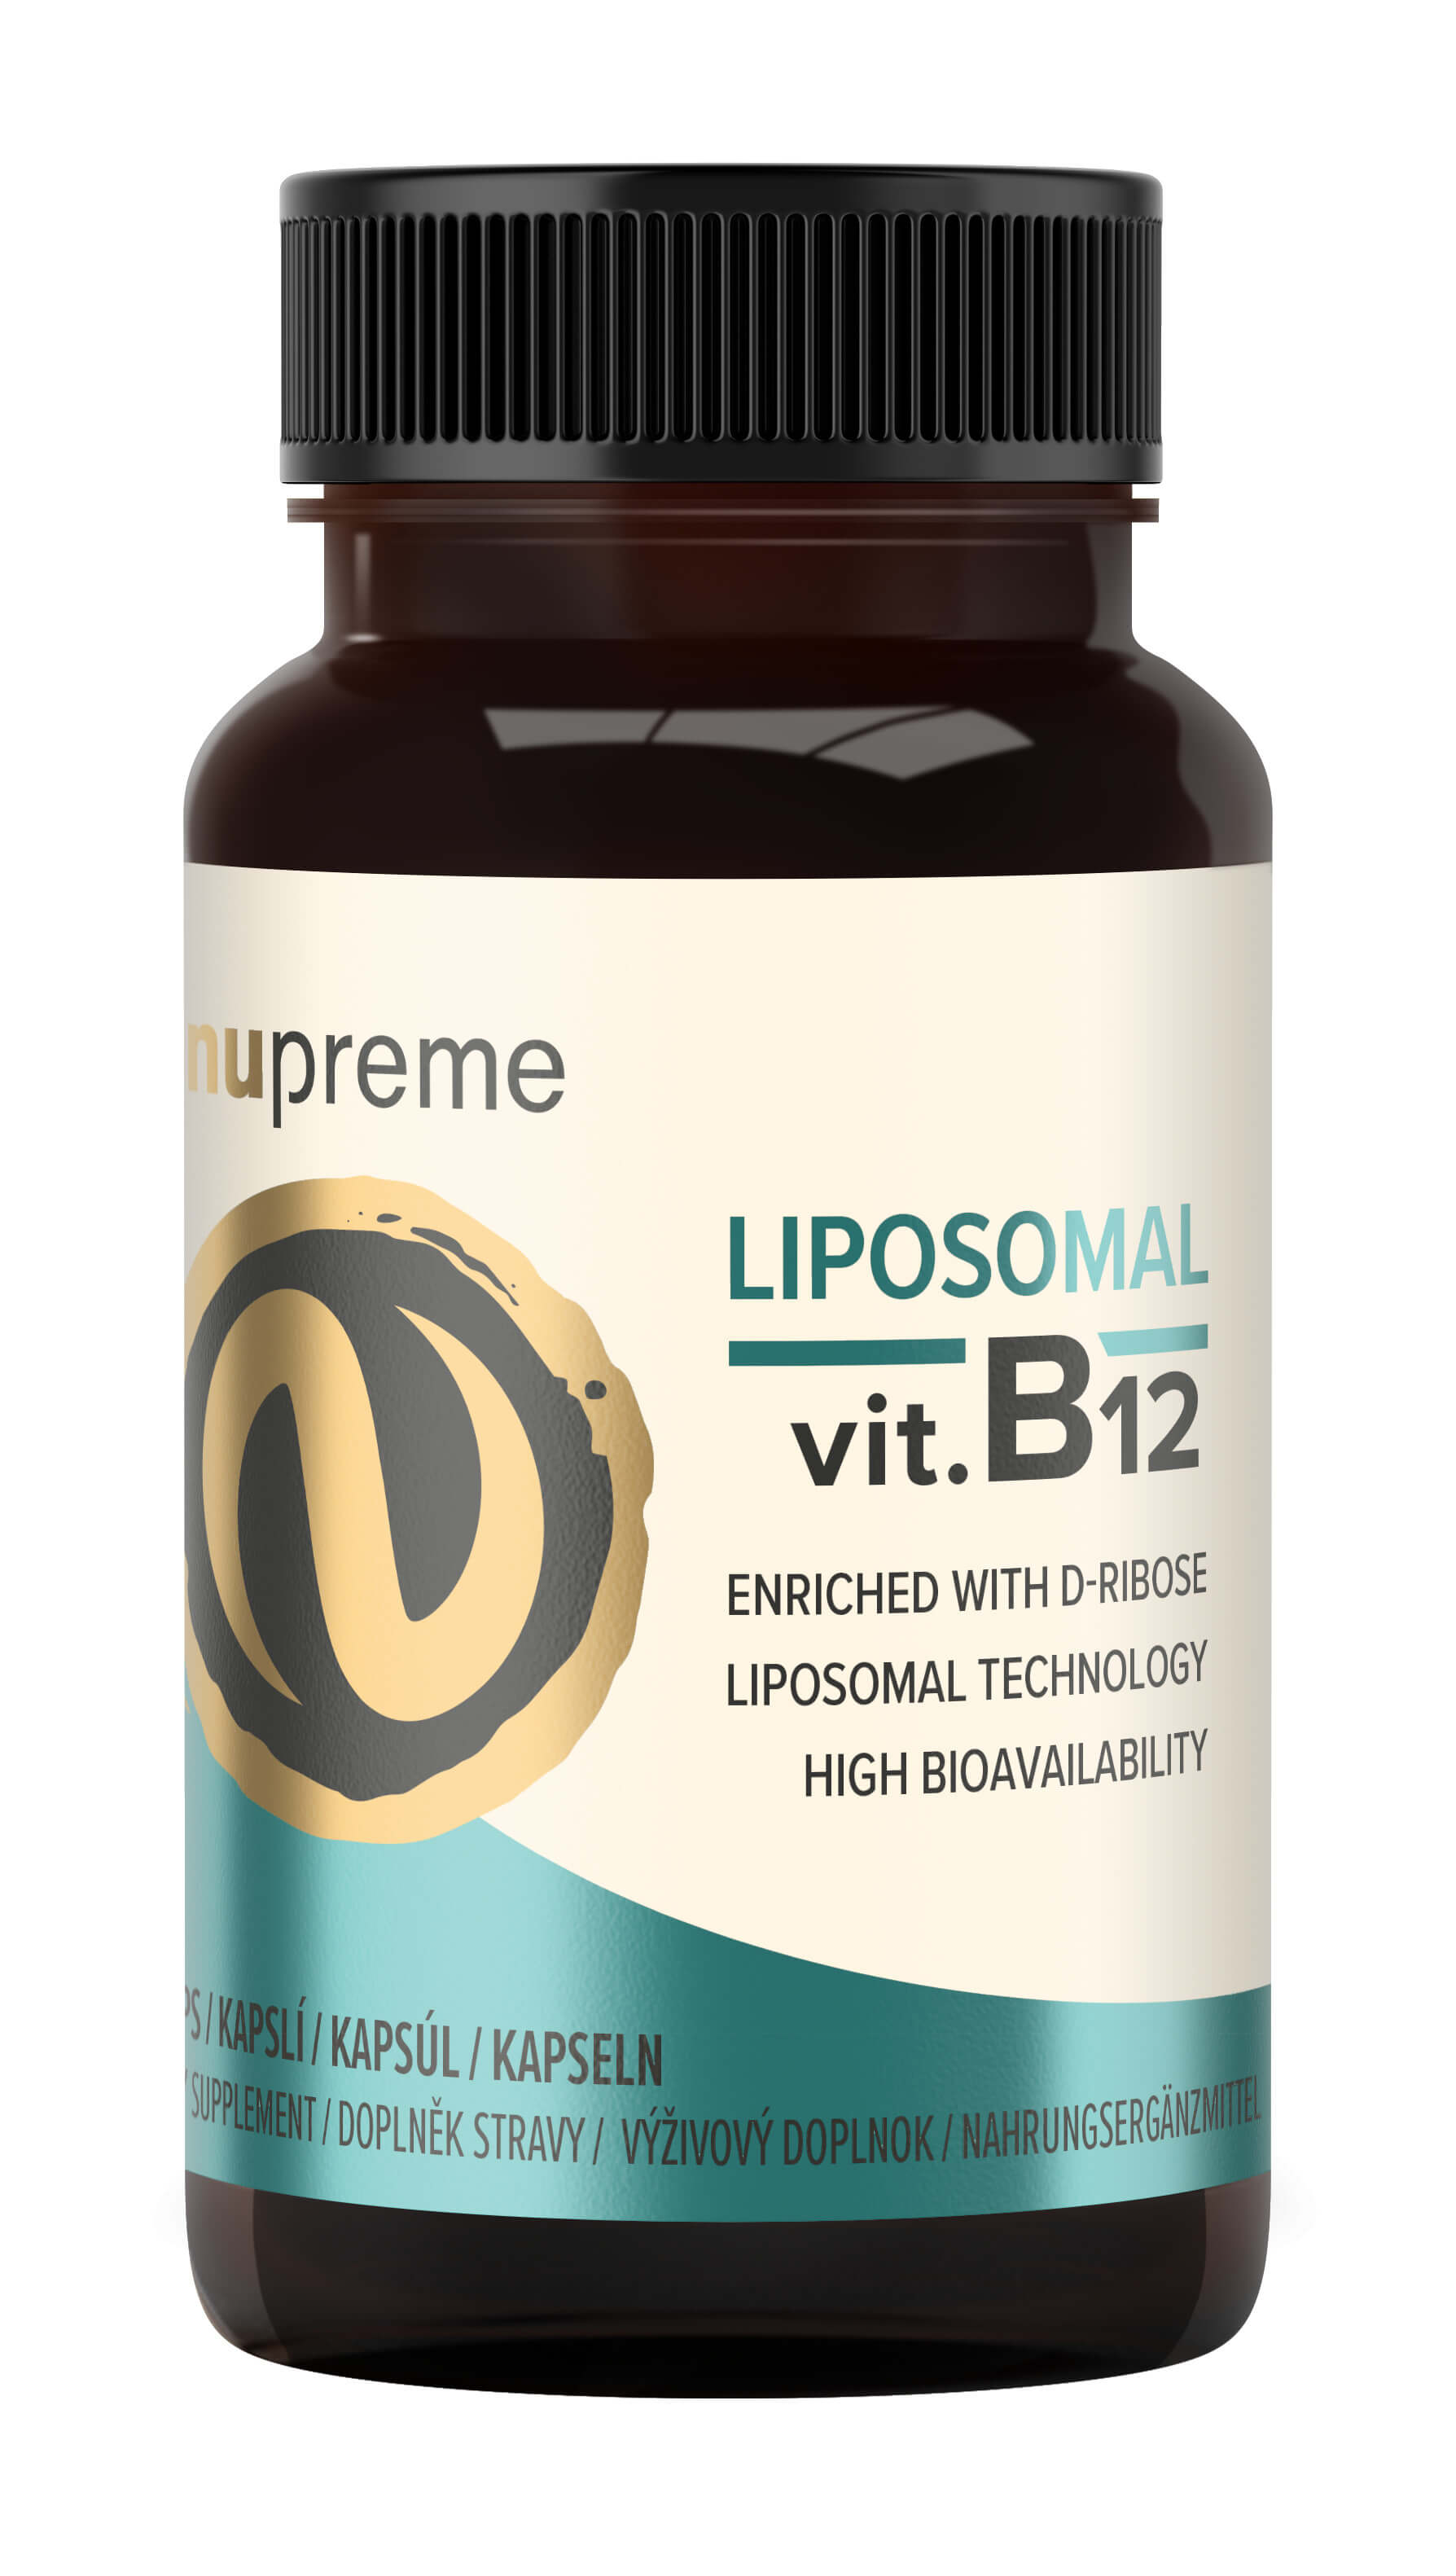 Zobrazit detail výrobku Nupreme Liposomal Vit. B12 30 kapslí